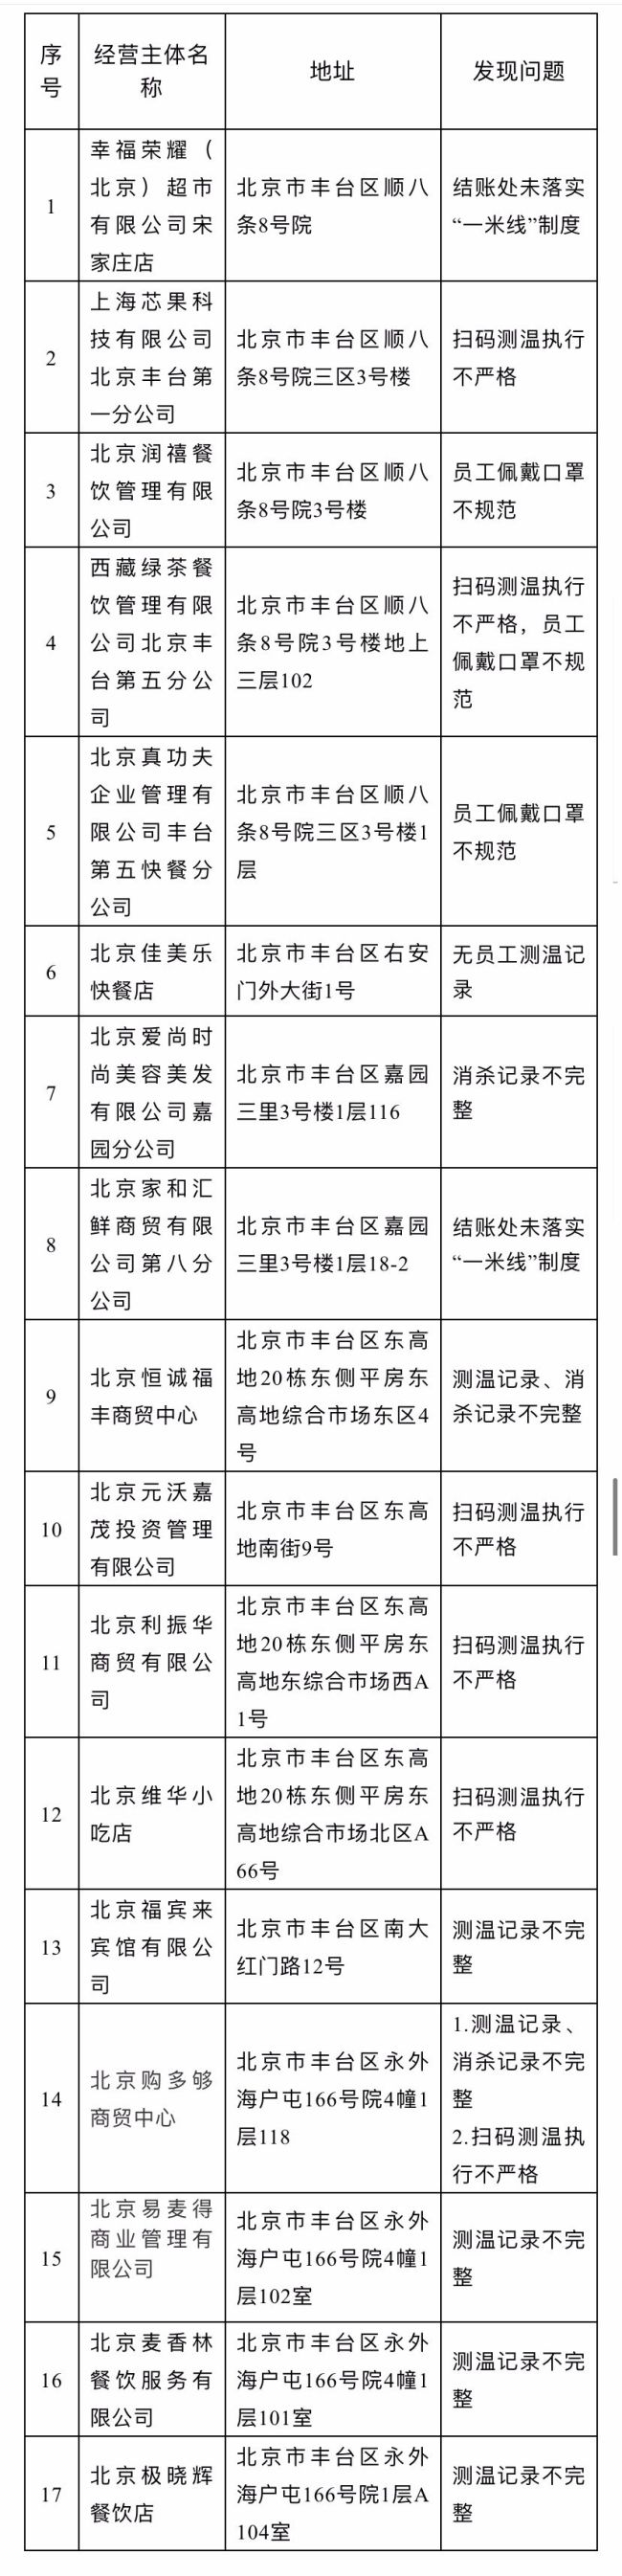 疫情防控不到位 北京丰台17家企业被通报